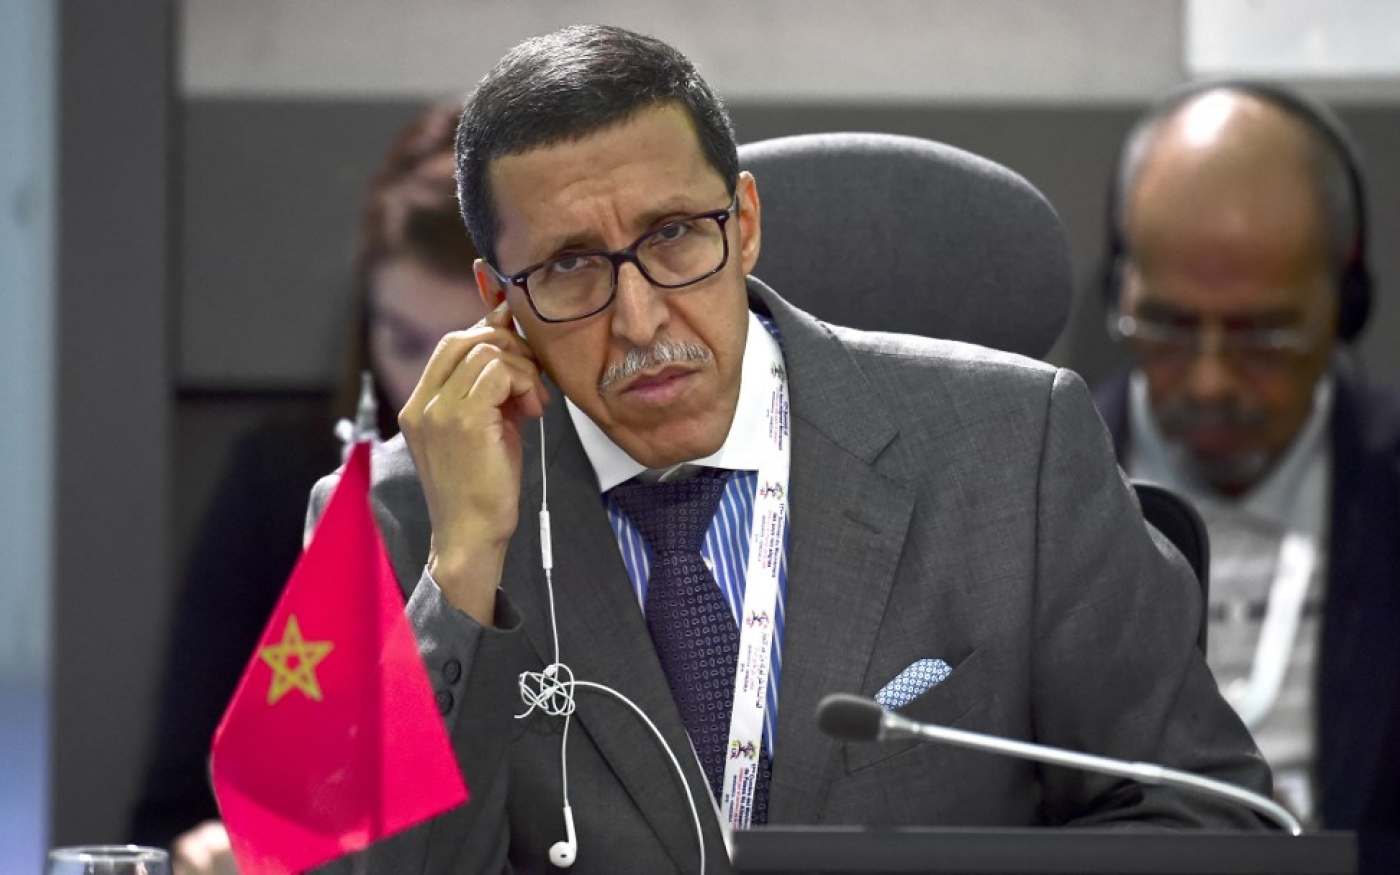 Pour Omar Hilale, représentant marocain aux Nations unies, « l’autodétermination n’est pas un principe à la carte » (AFP/Ronaldo Schemidt)